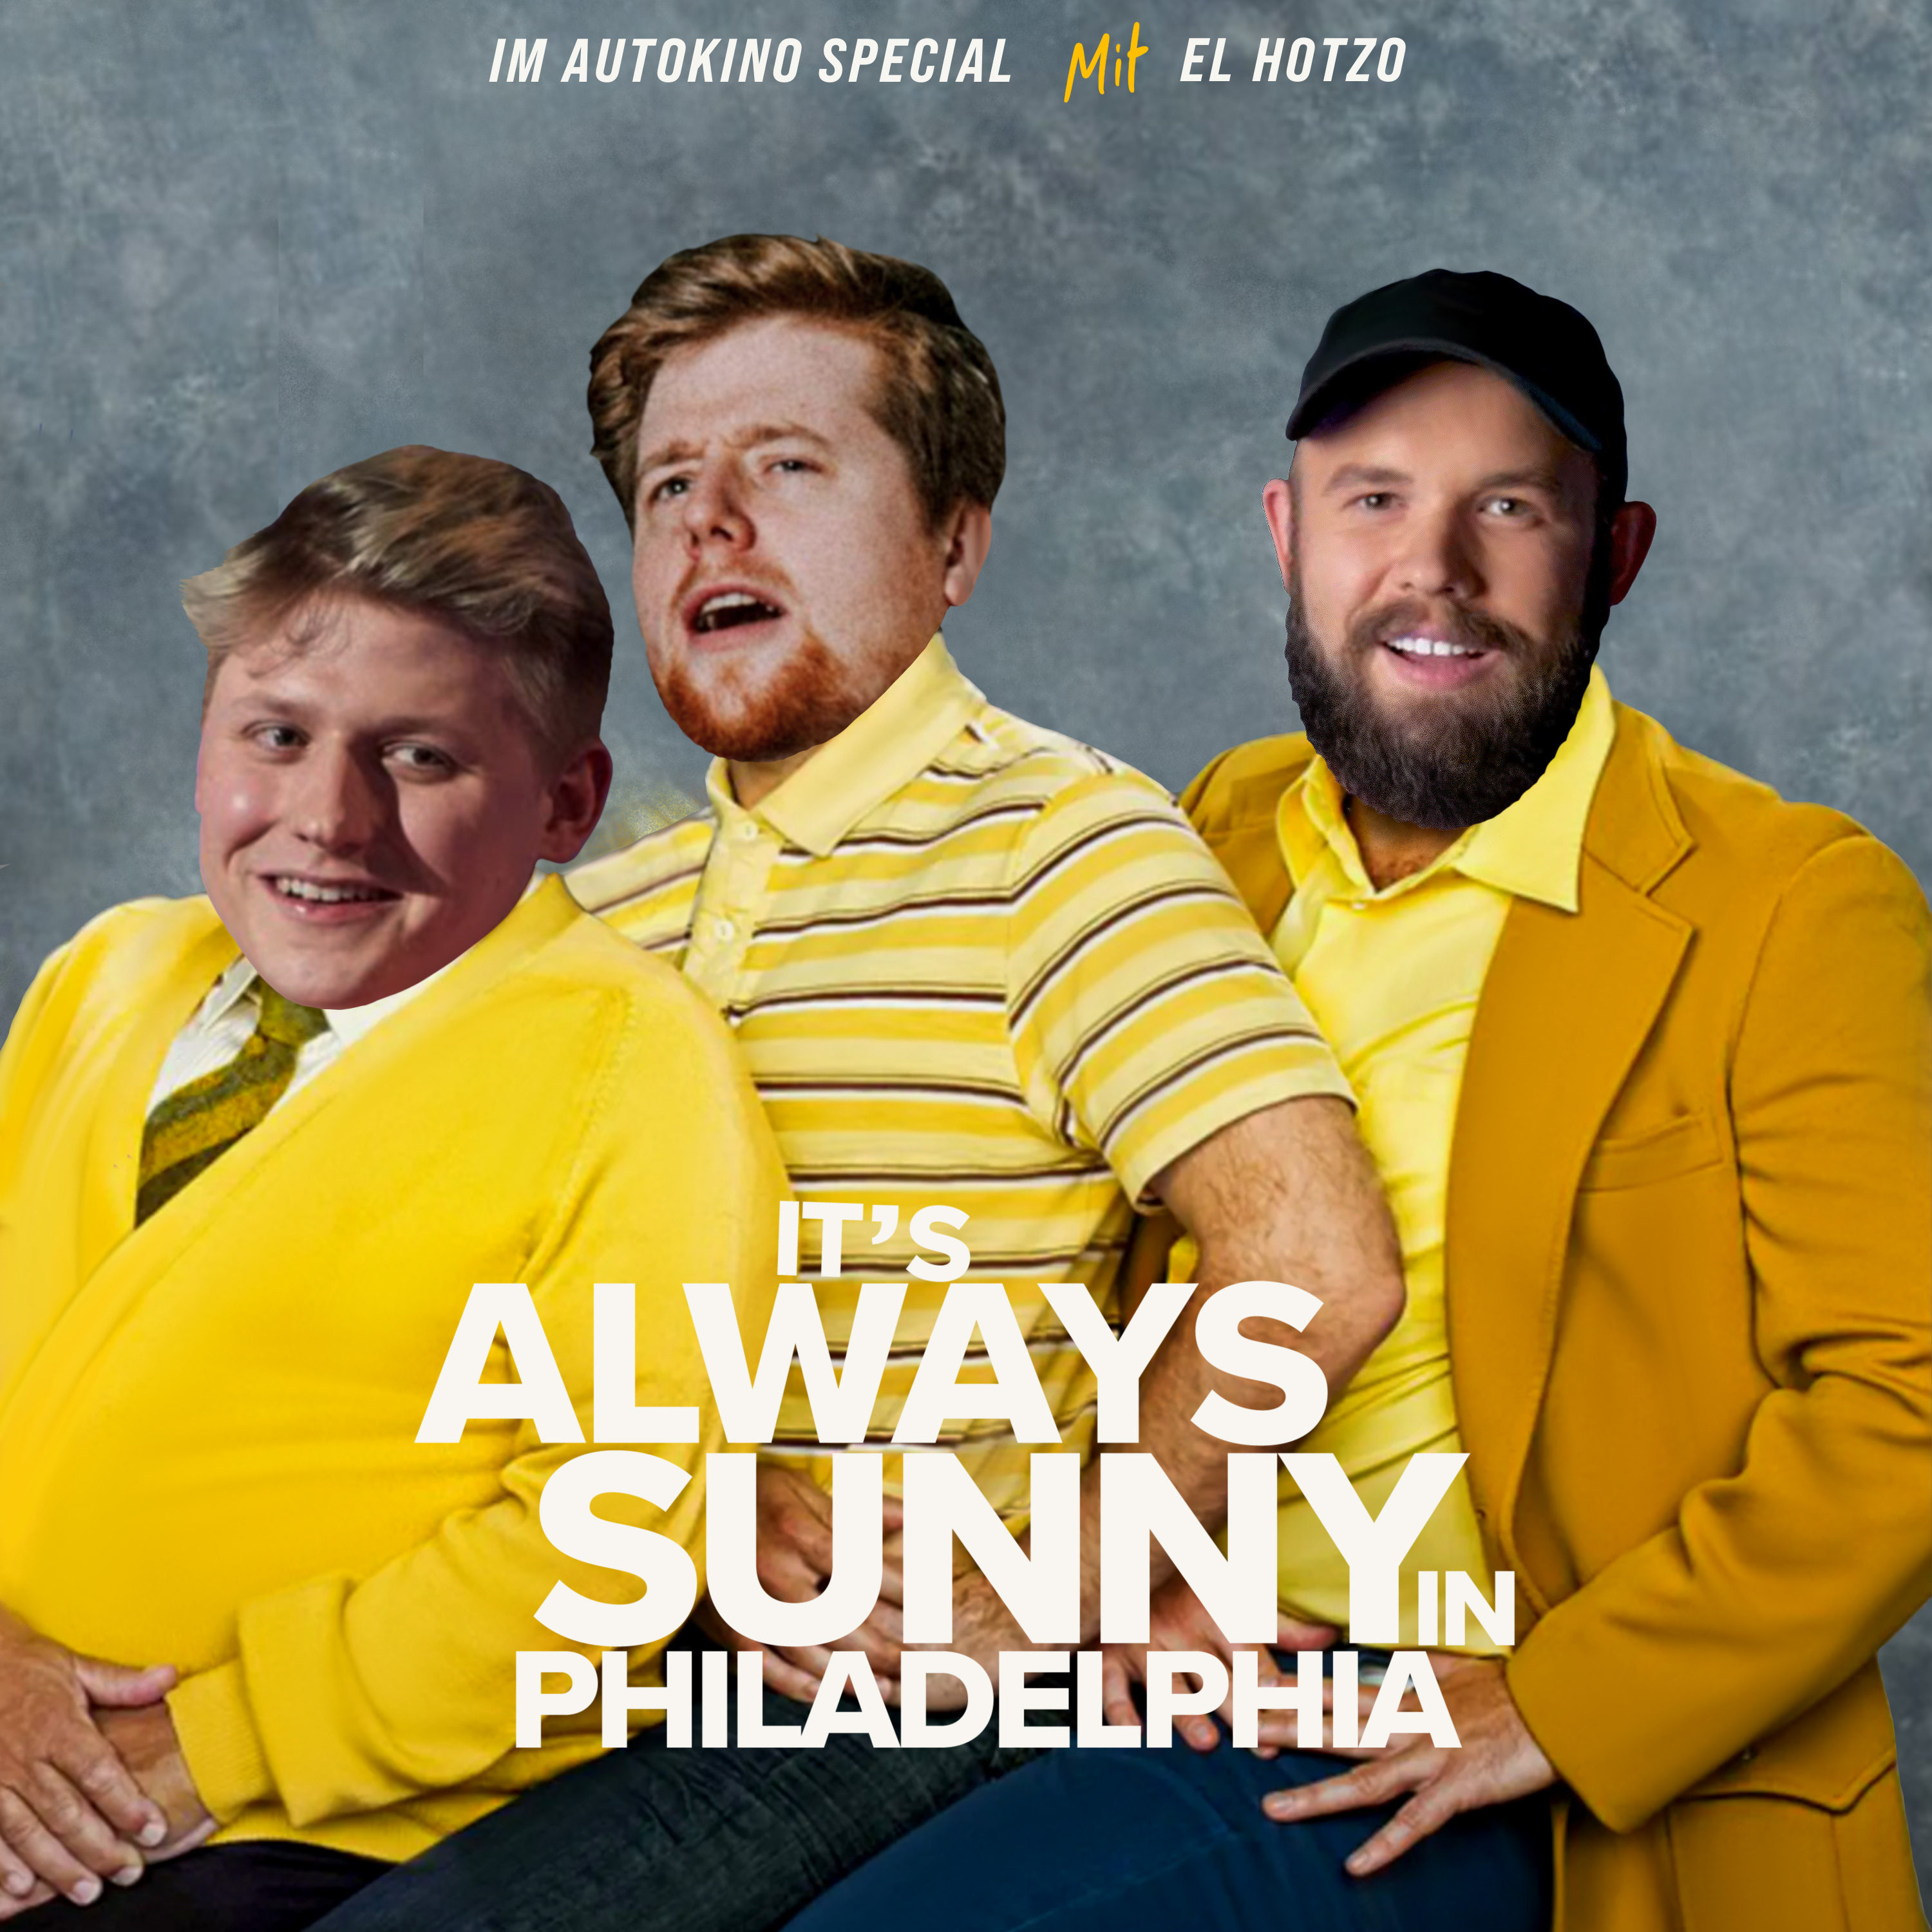 Folge 155 - It’s always sunny in Philadelphia (feat. El Hotzo)